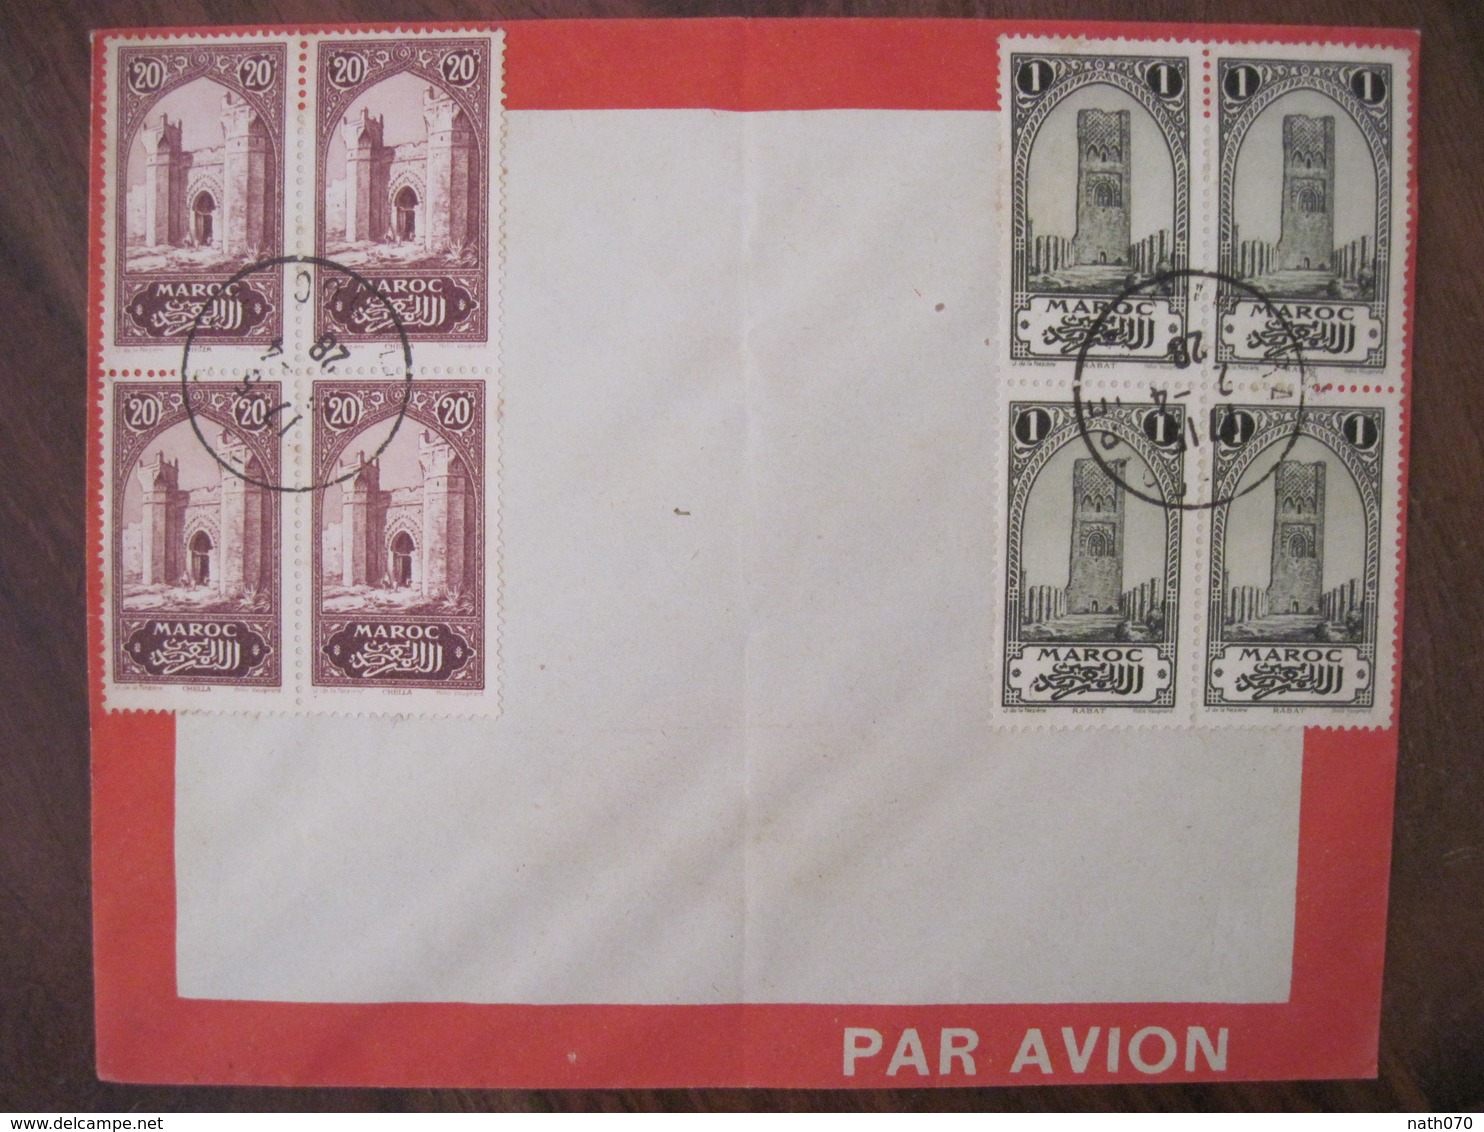 MAROC 1928 FRANCE Par Avion Lettre Enveloppe Cover Air Mail Colonie Bloc X 2 Ligne Senegal Algérie - Covers & Documents